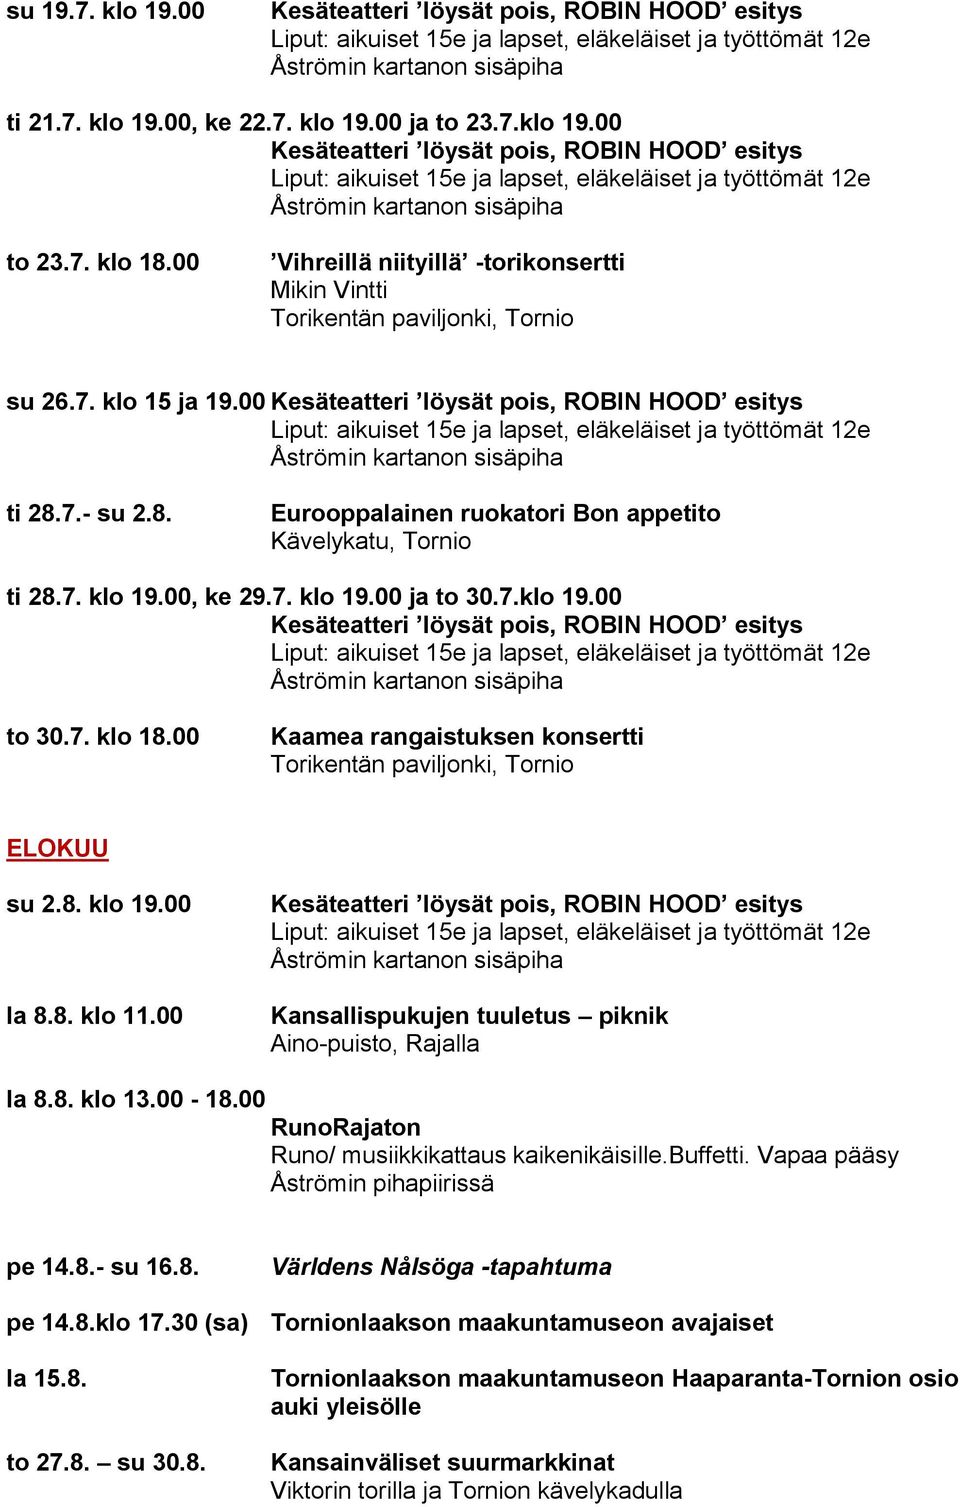 00 Kansallispukujen tuuletus piknik Aino-puisto, Rajalla la 8.8. klo 13.00-18.00 RunoRajaton Runo/ musiikkikattaus kaikenikäisille.buffetti. Vapaa pääsy Åströmin pihapiirissä pe 14.8.- su 16.8. Världens Nålsöga -tapahtuma pe 14.